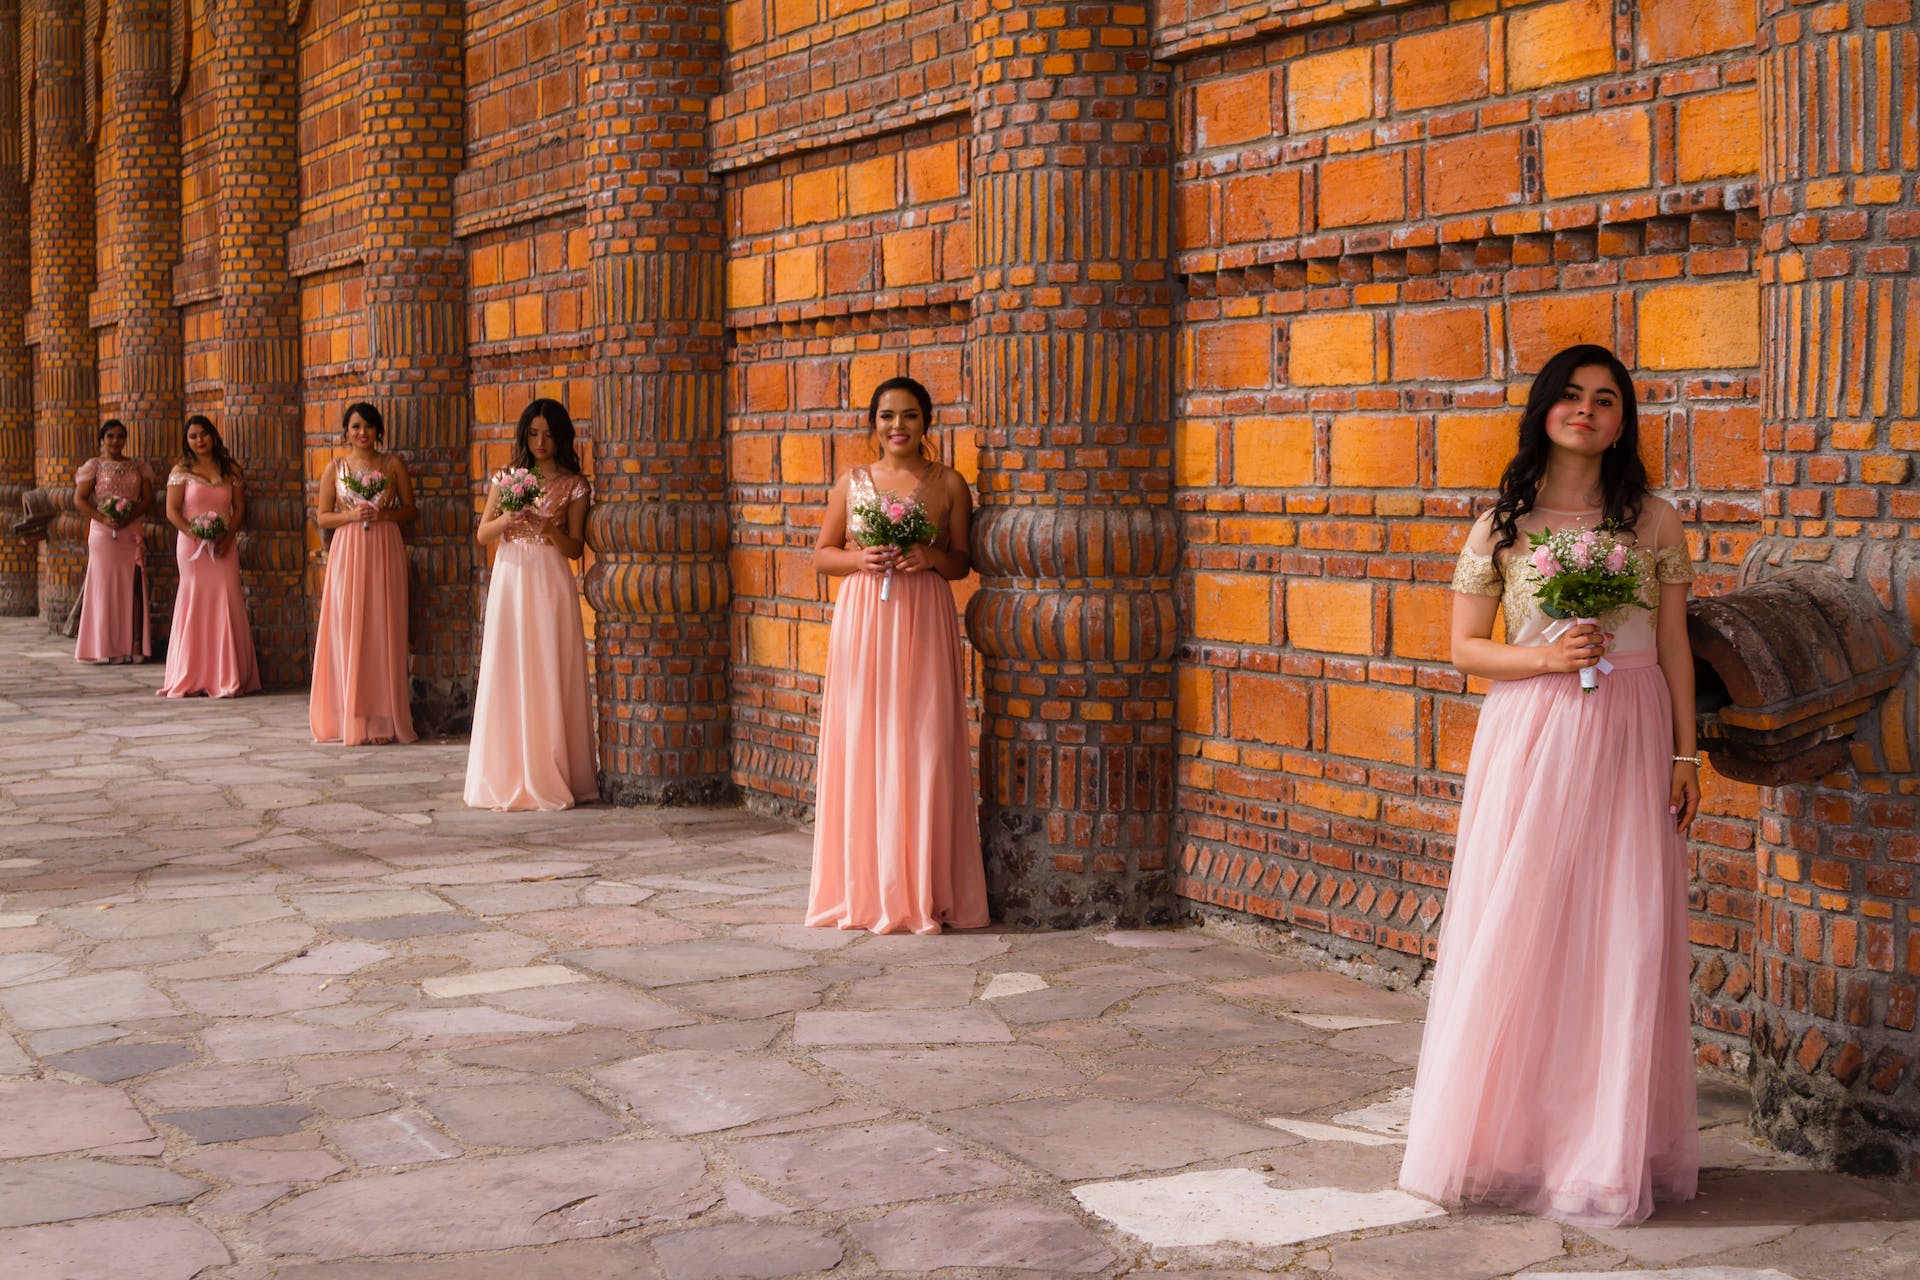 Mujeres con vestidos rosas sosteniendo flores | Fuente: Pexels